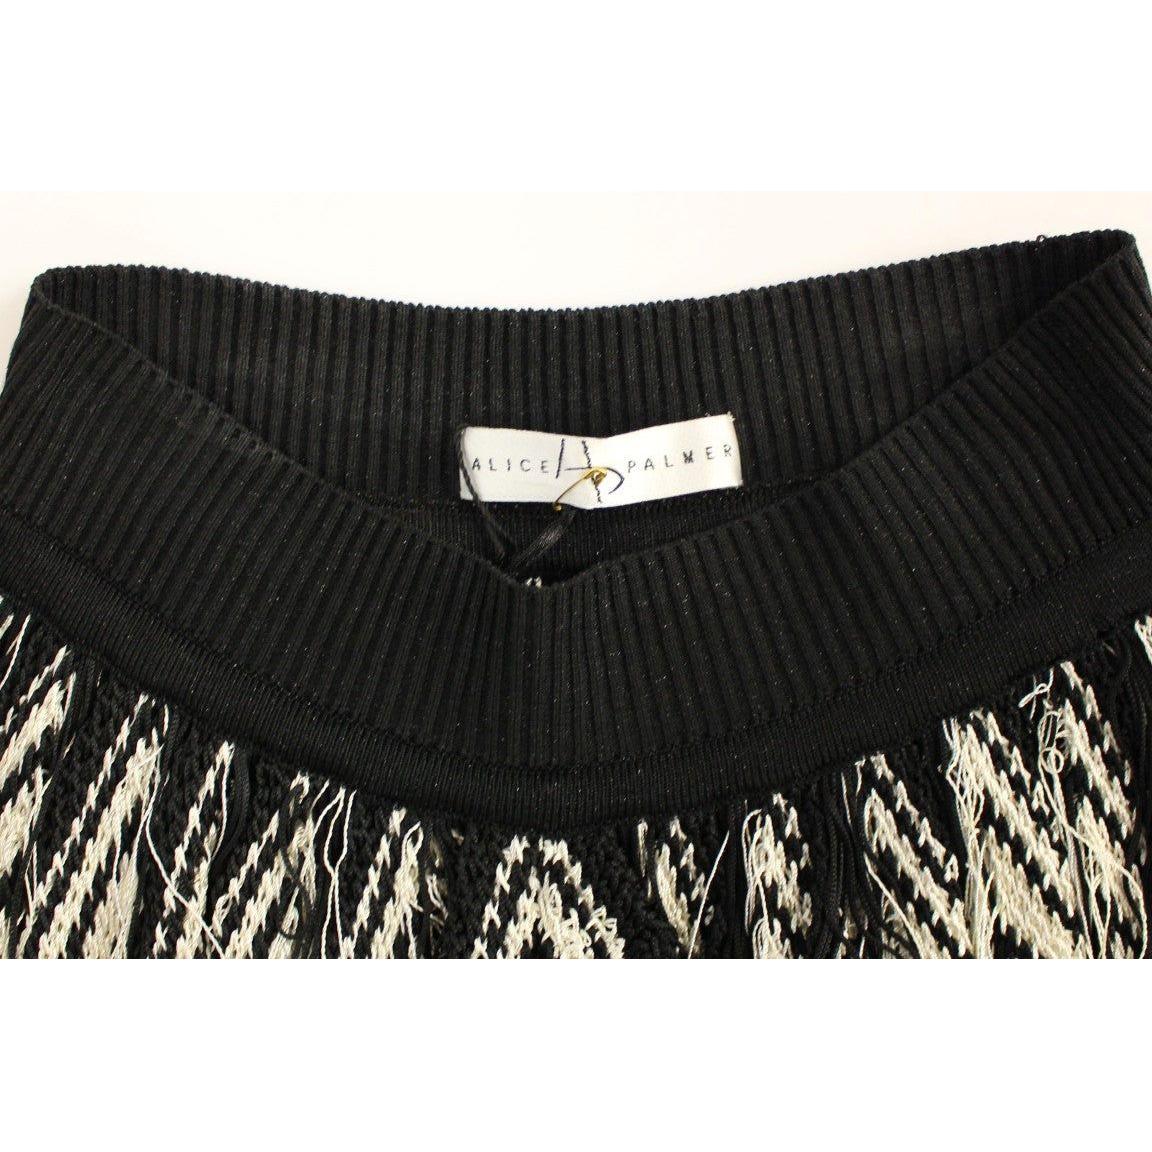 Alice Palmer Chic Black & White Knitted Skirt white-black-knitted-assymetrical-skirt